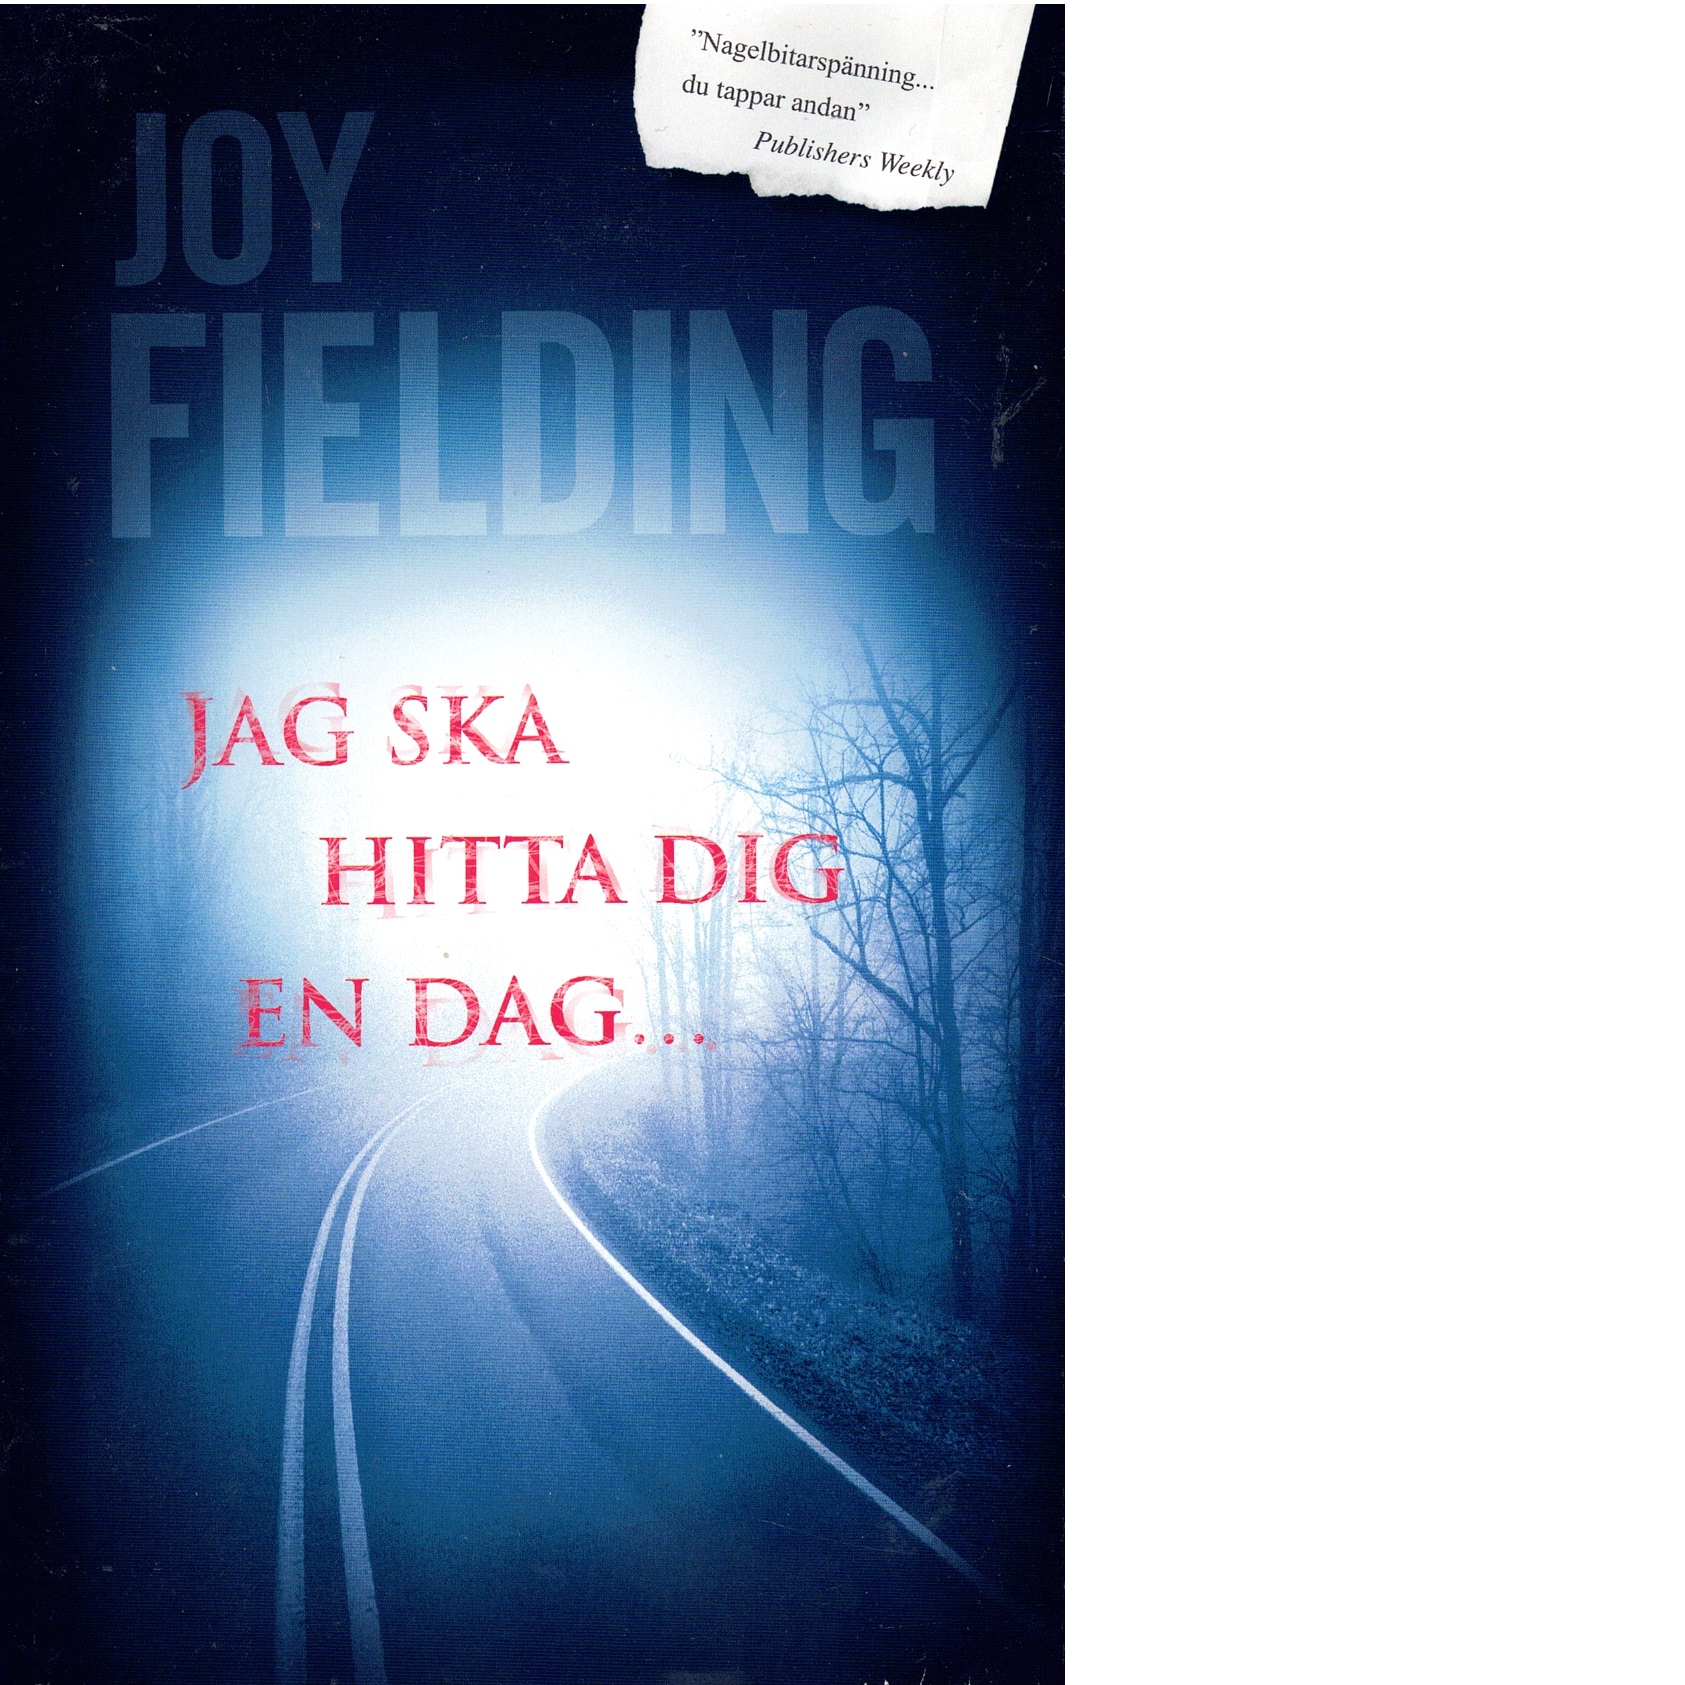 Jag ska hitta dig en dag - Fielding, Joy